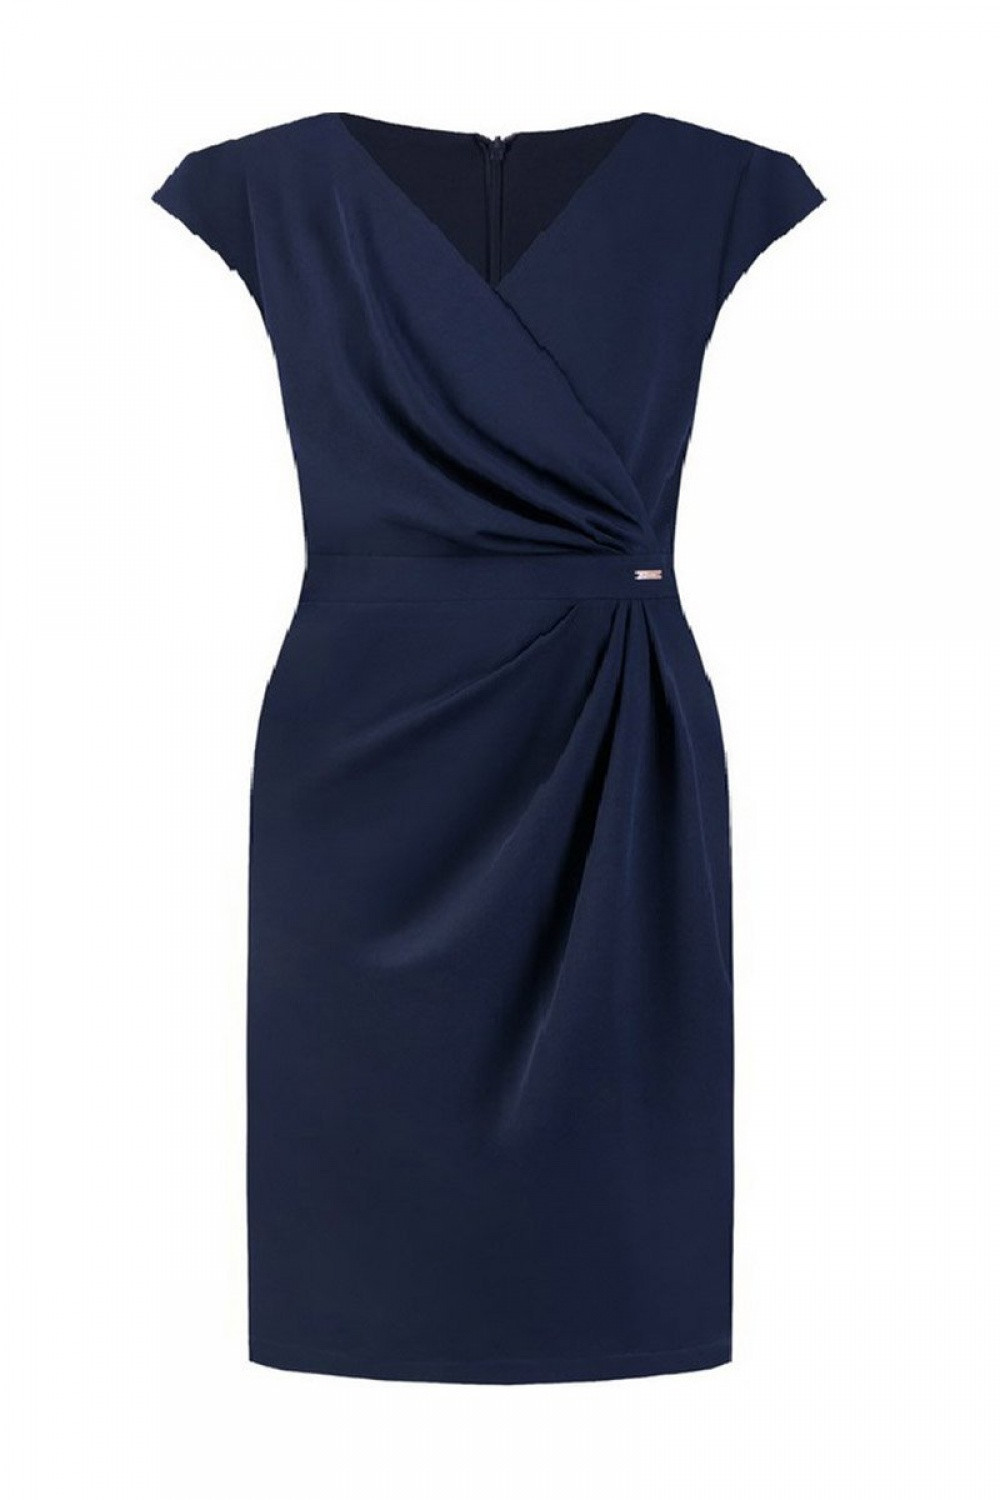 Dámské šaty model 15218501 - Jersa Velikost: 50, Barvy: tmavě modrá